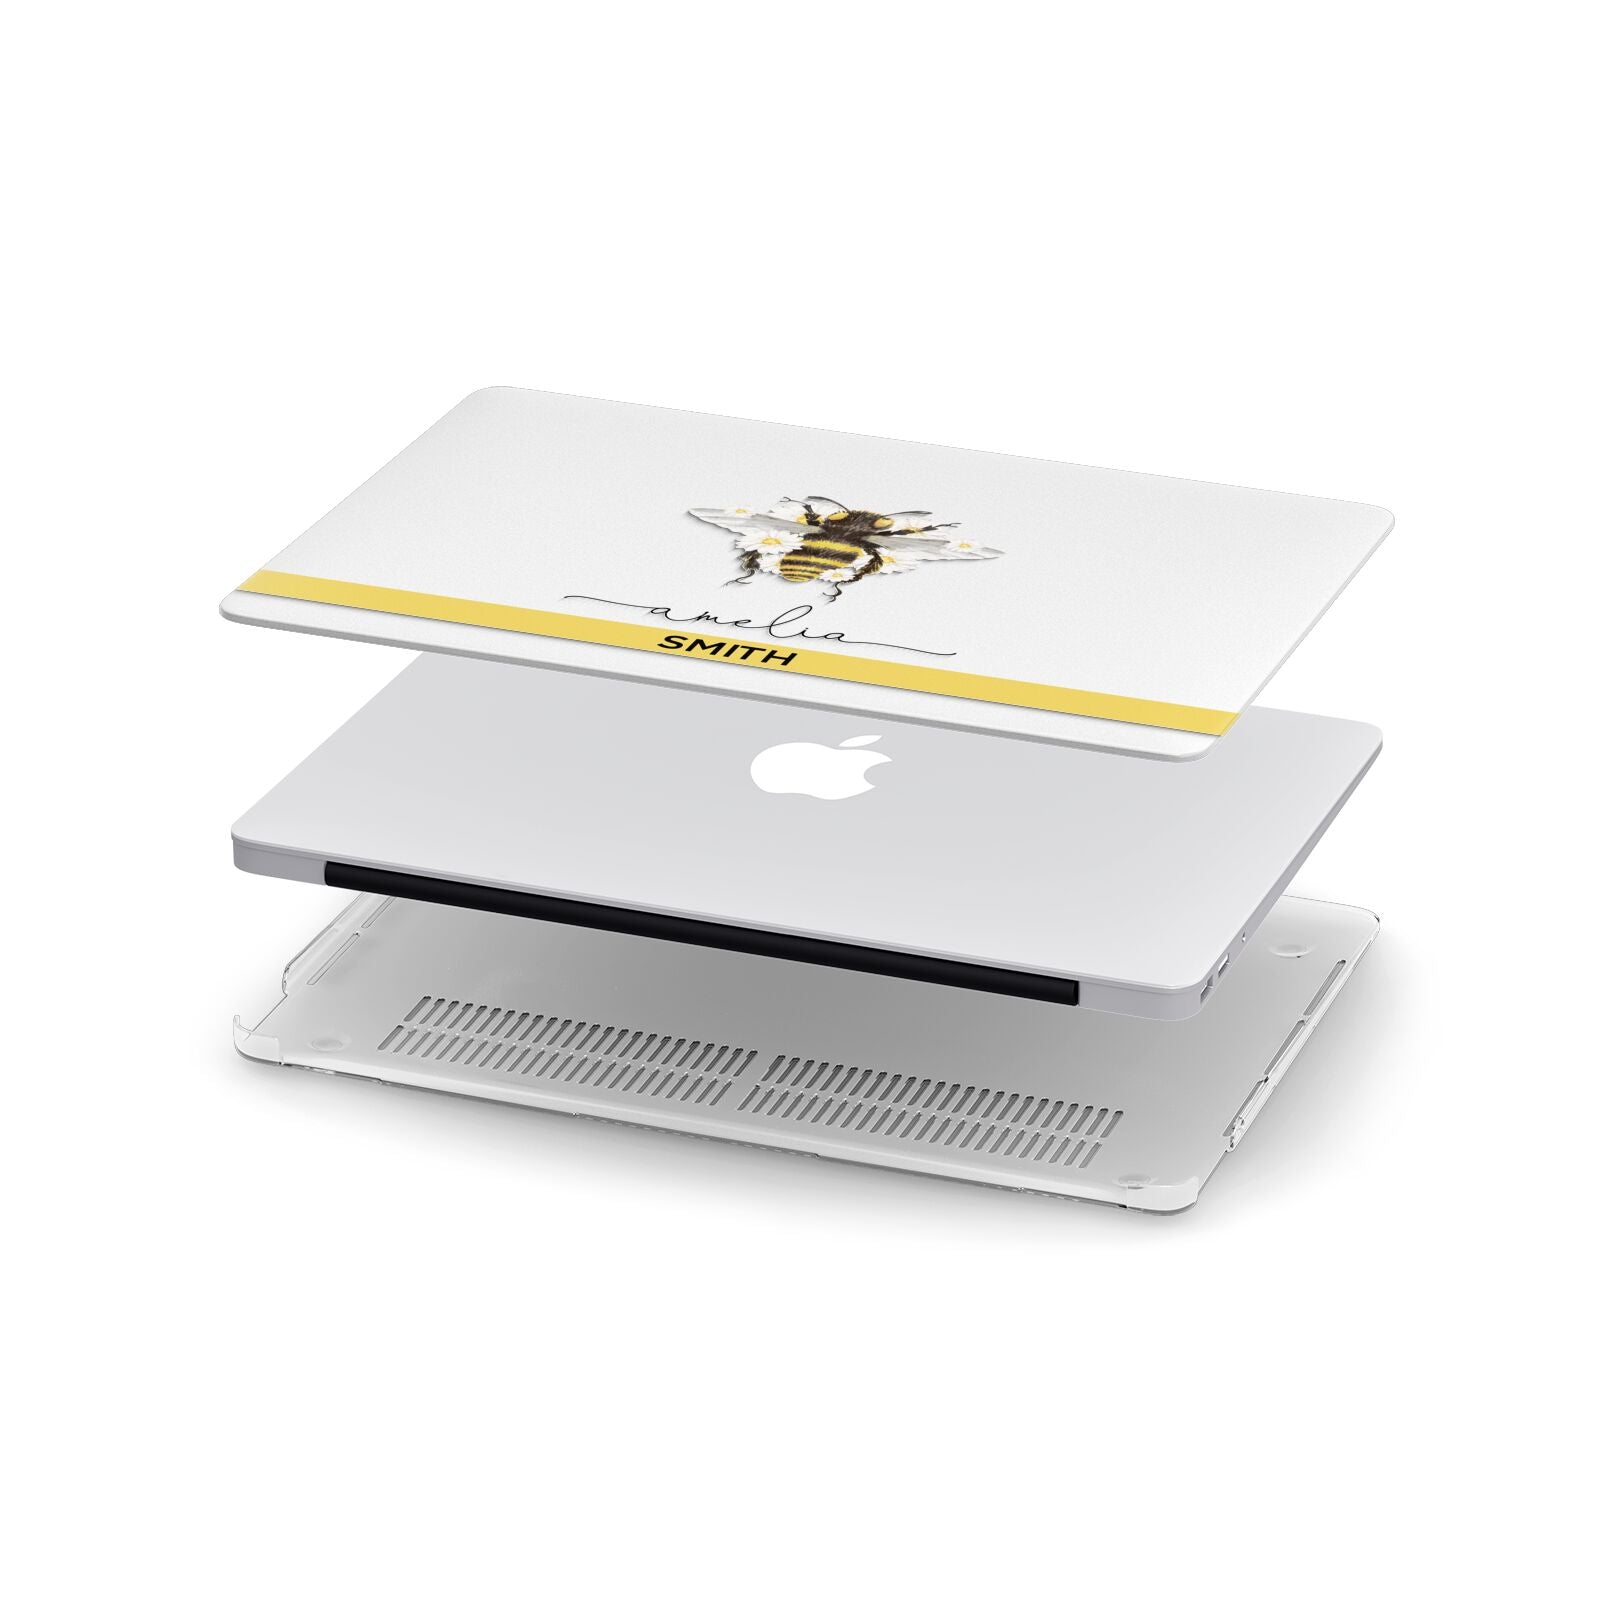 Bees Daisies Personalised Names Apple MacBook Case in Detail